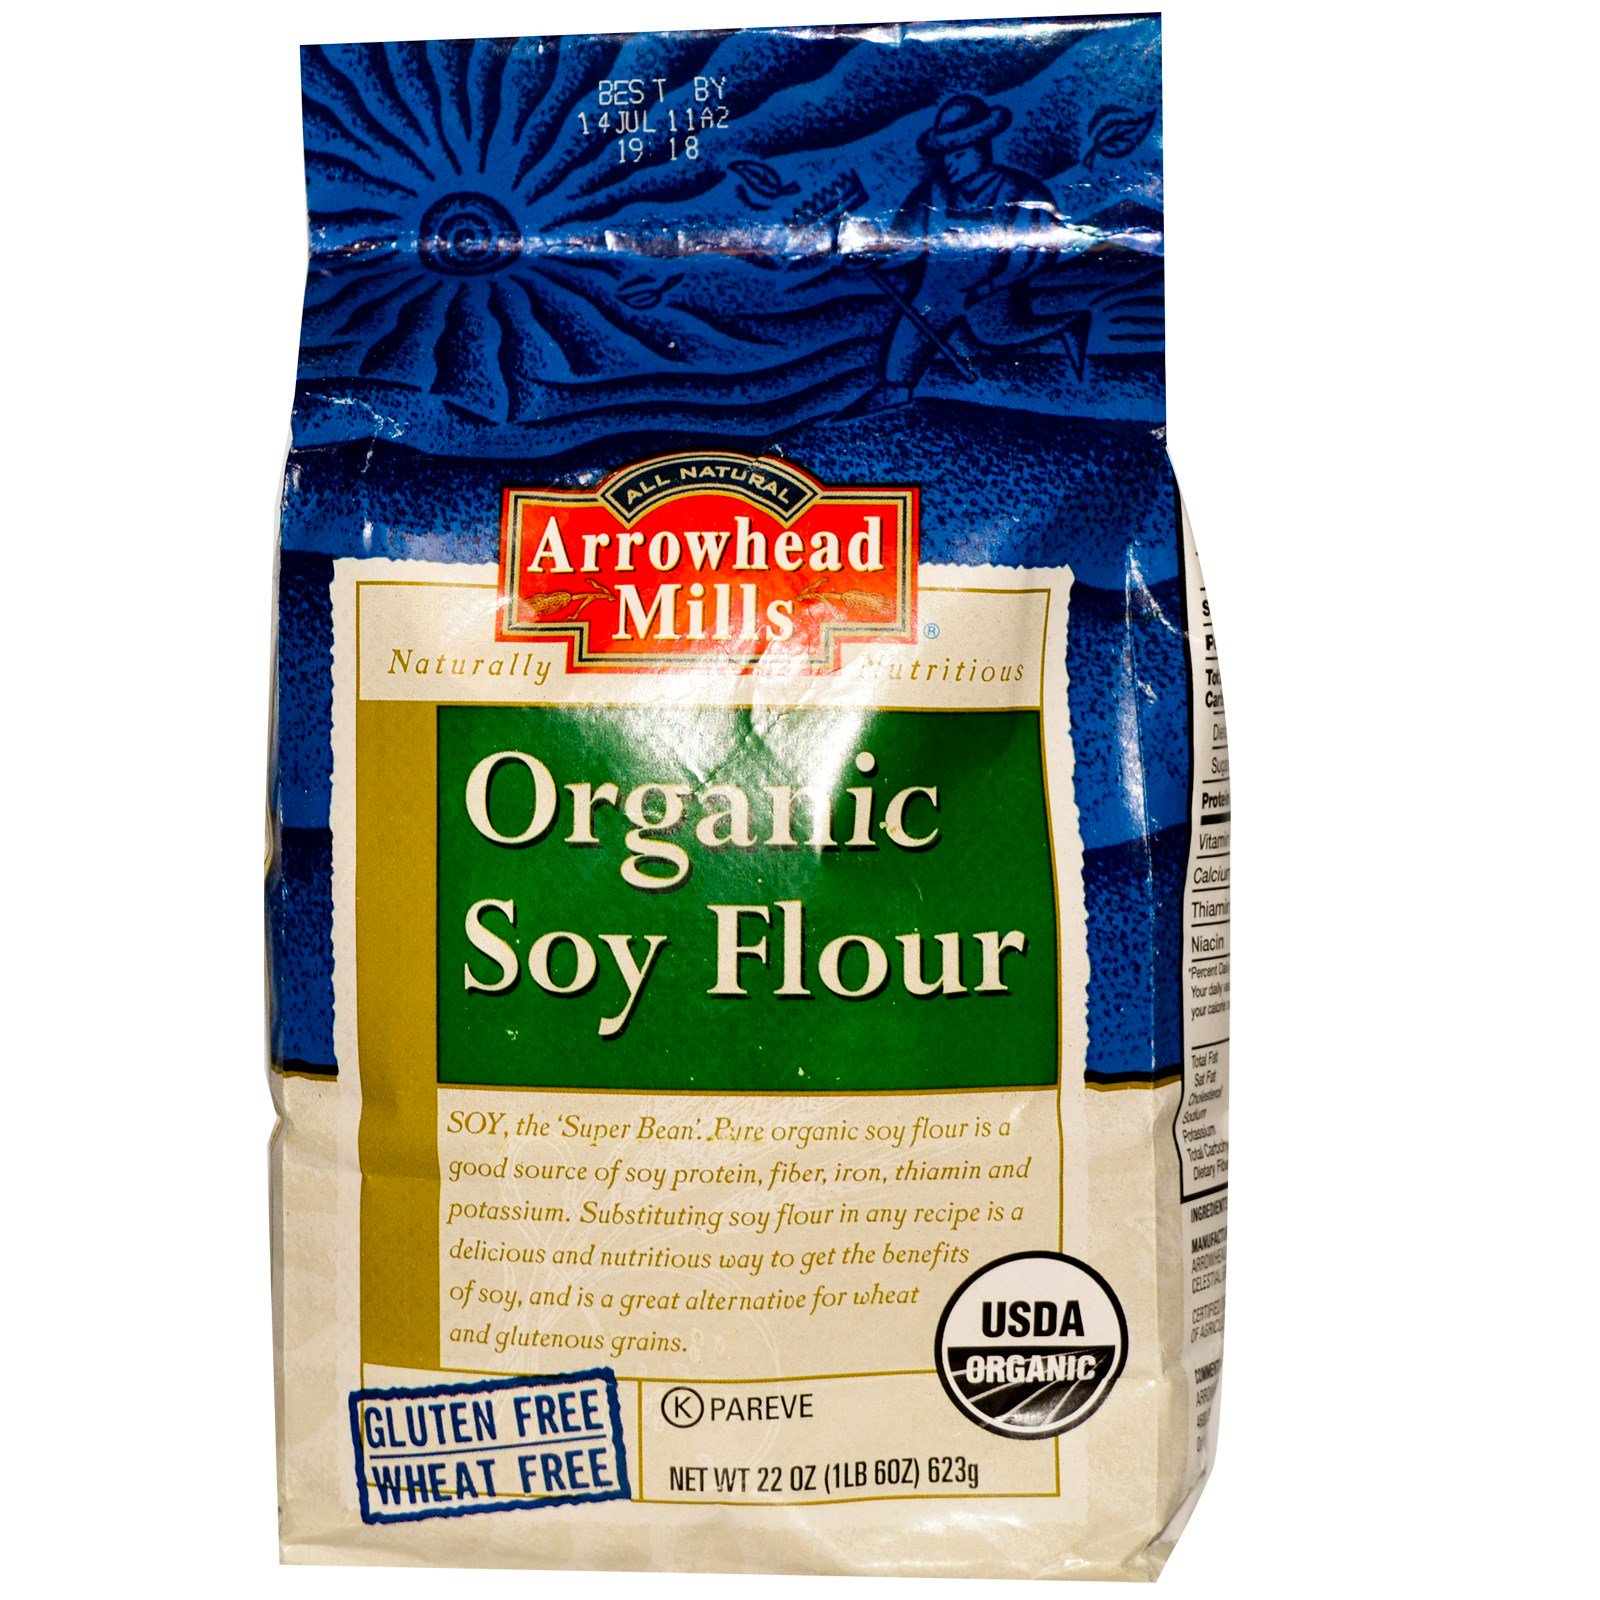 arrowhead mills, organic soy flour, 22 oz (623 g)